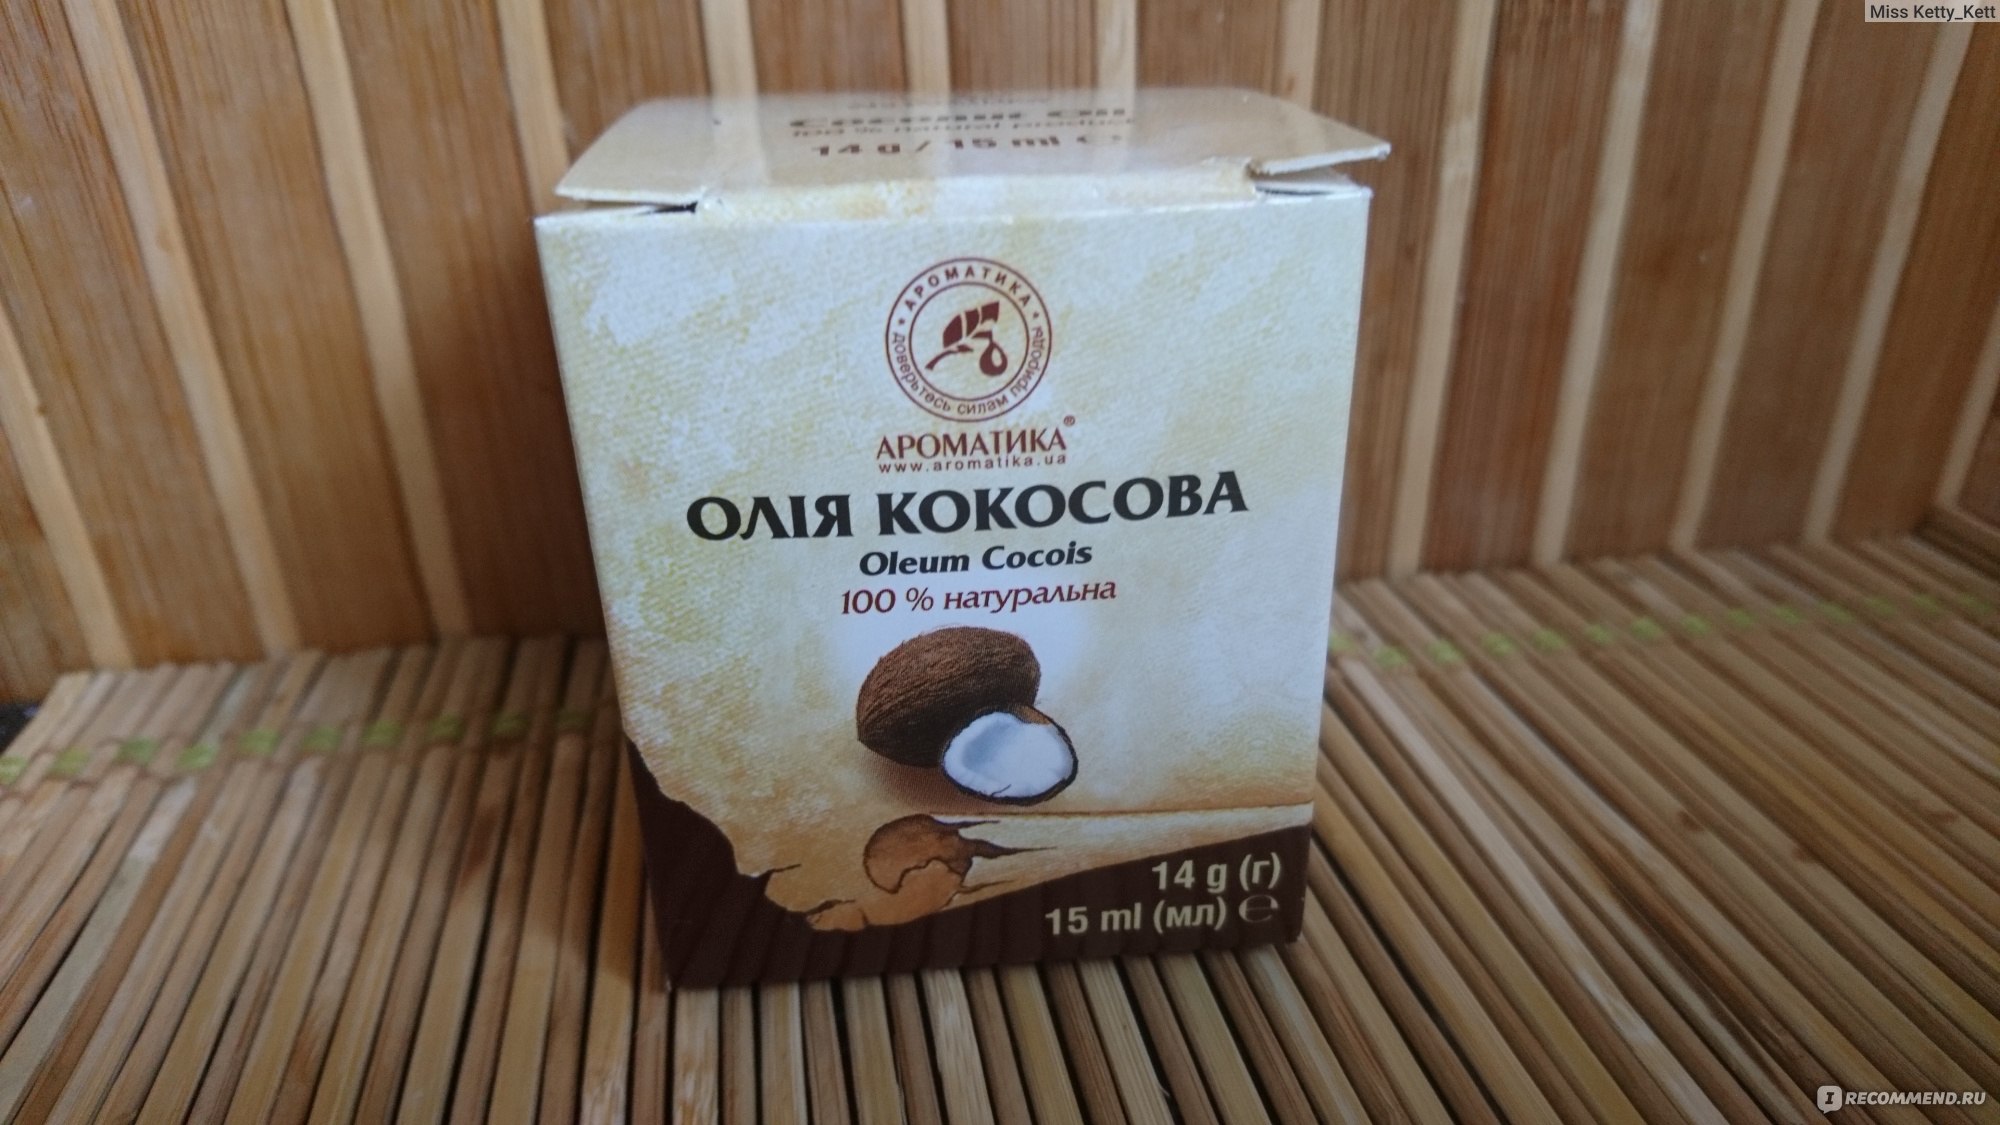 Кокосовое масло от ароматика для волос